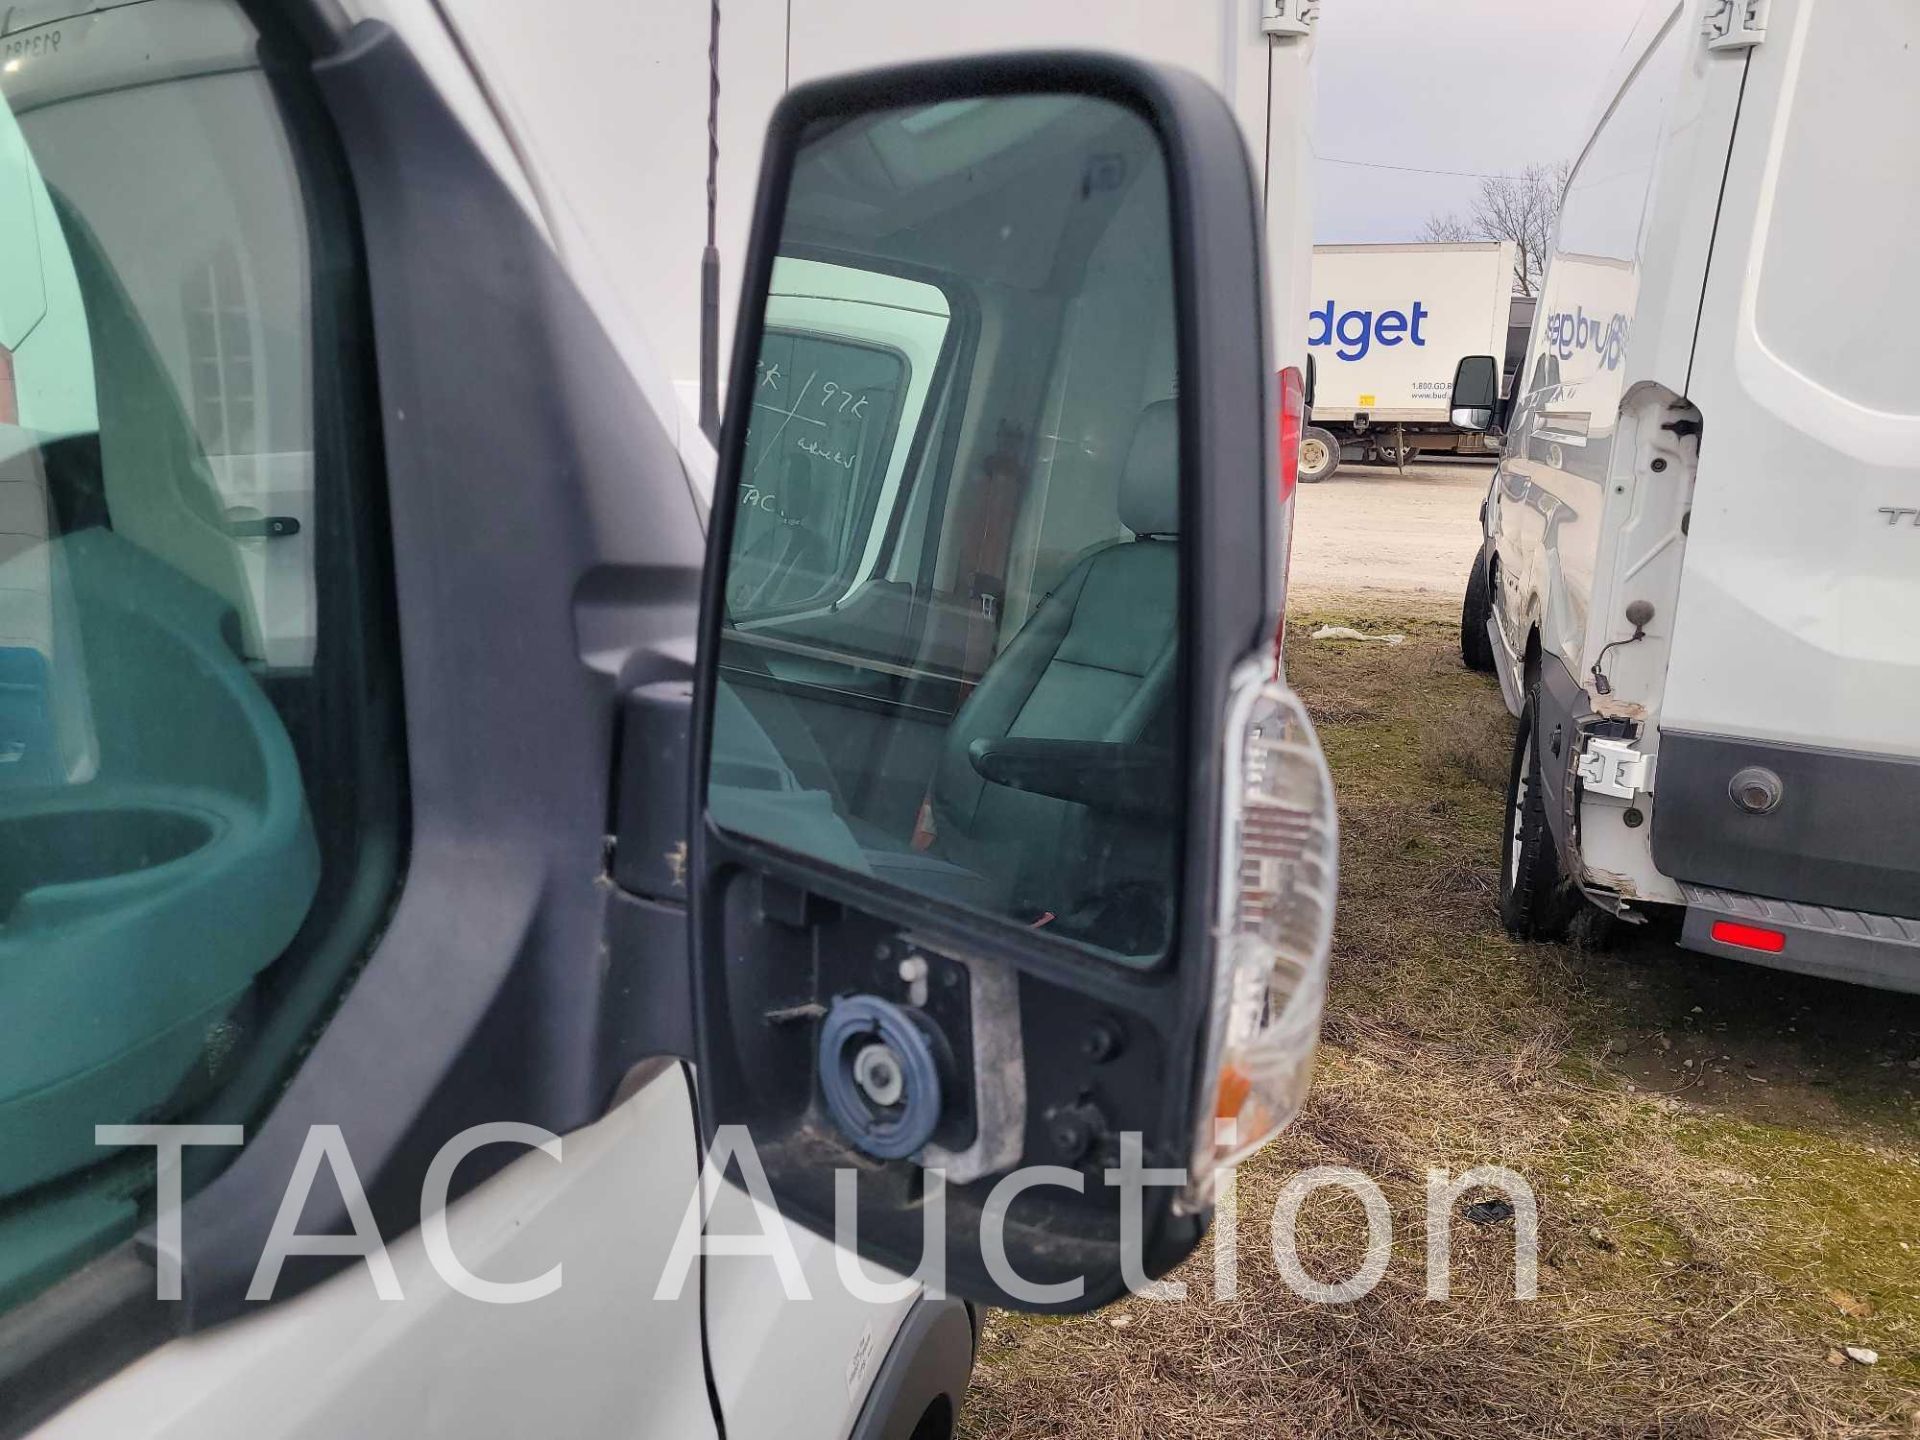 2018 Ford Transit 150 Cargo Van - Image 16 of 47